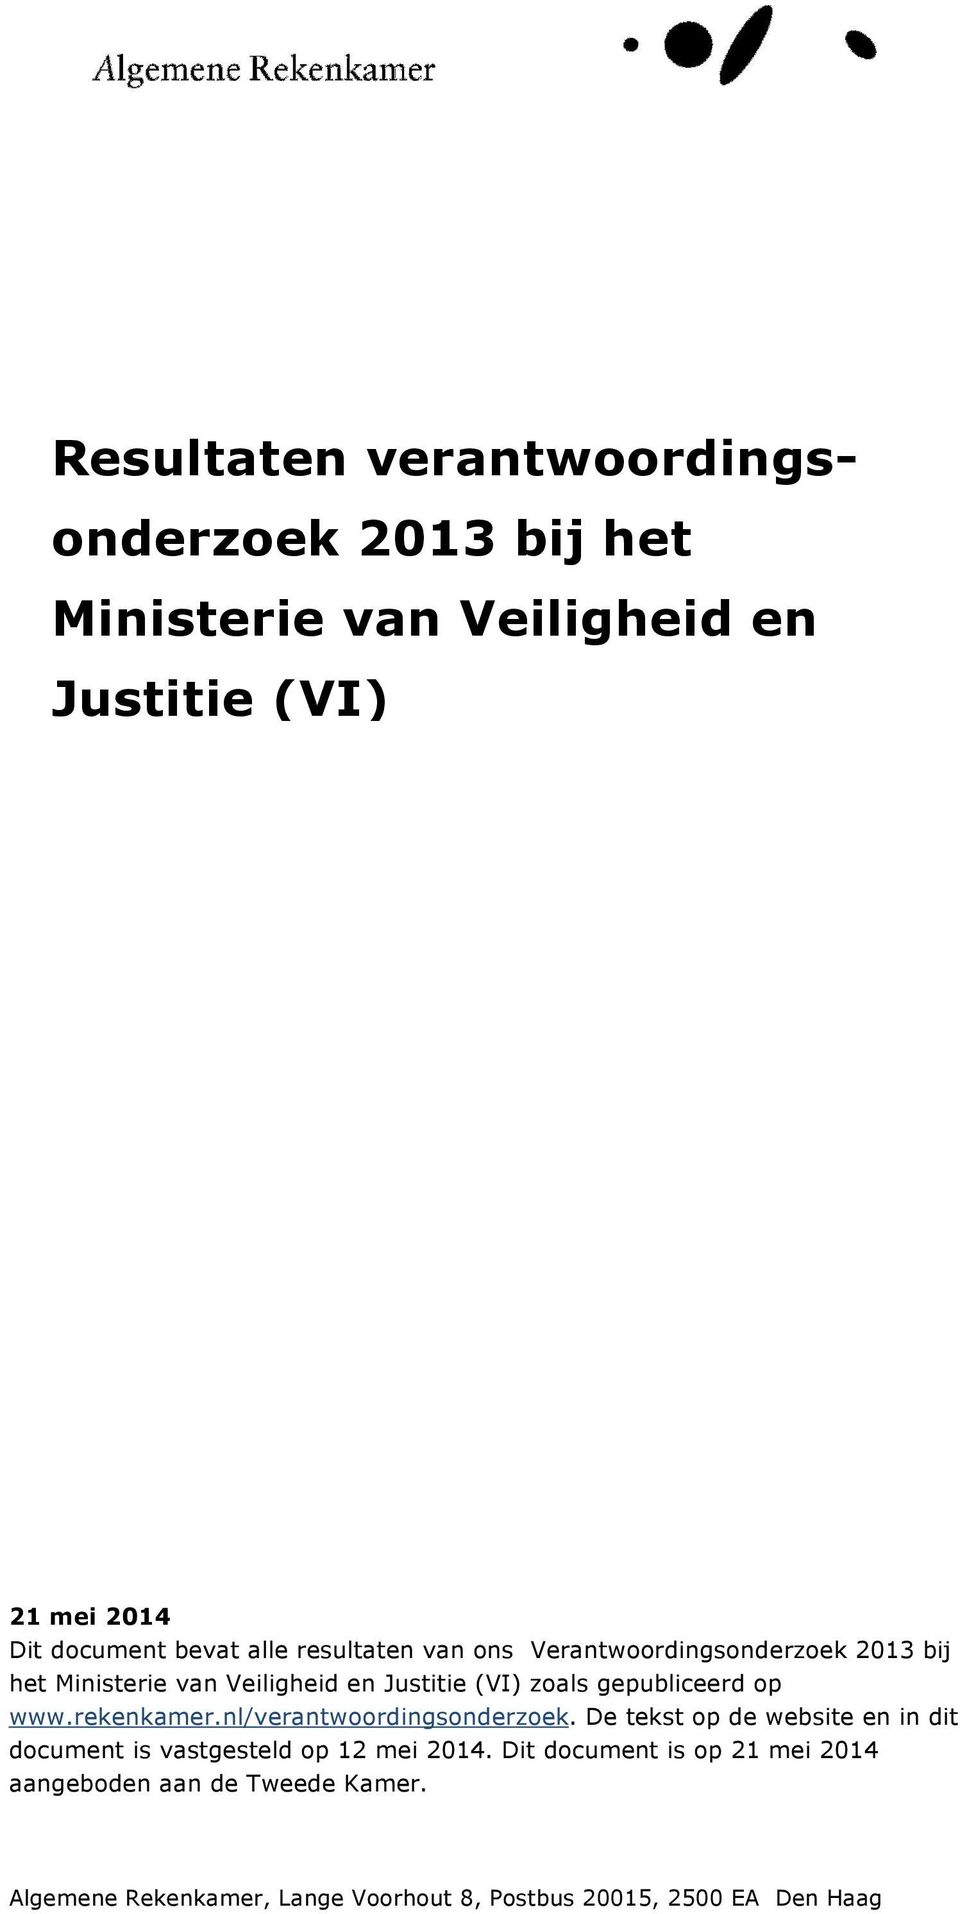 op www.rekenkamer.nl/verantwoordingsonderzoek. De tekst op de website en in dit document is vastgesteld op 12 mei 2014.